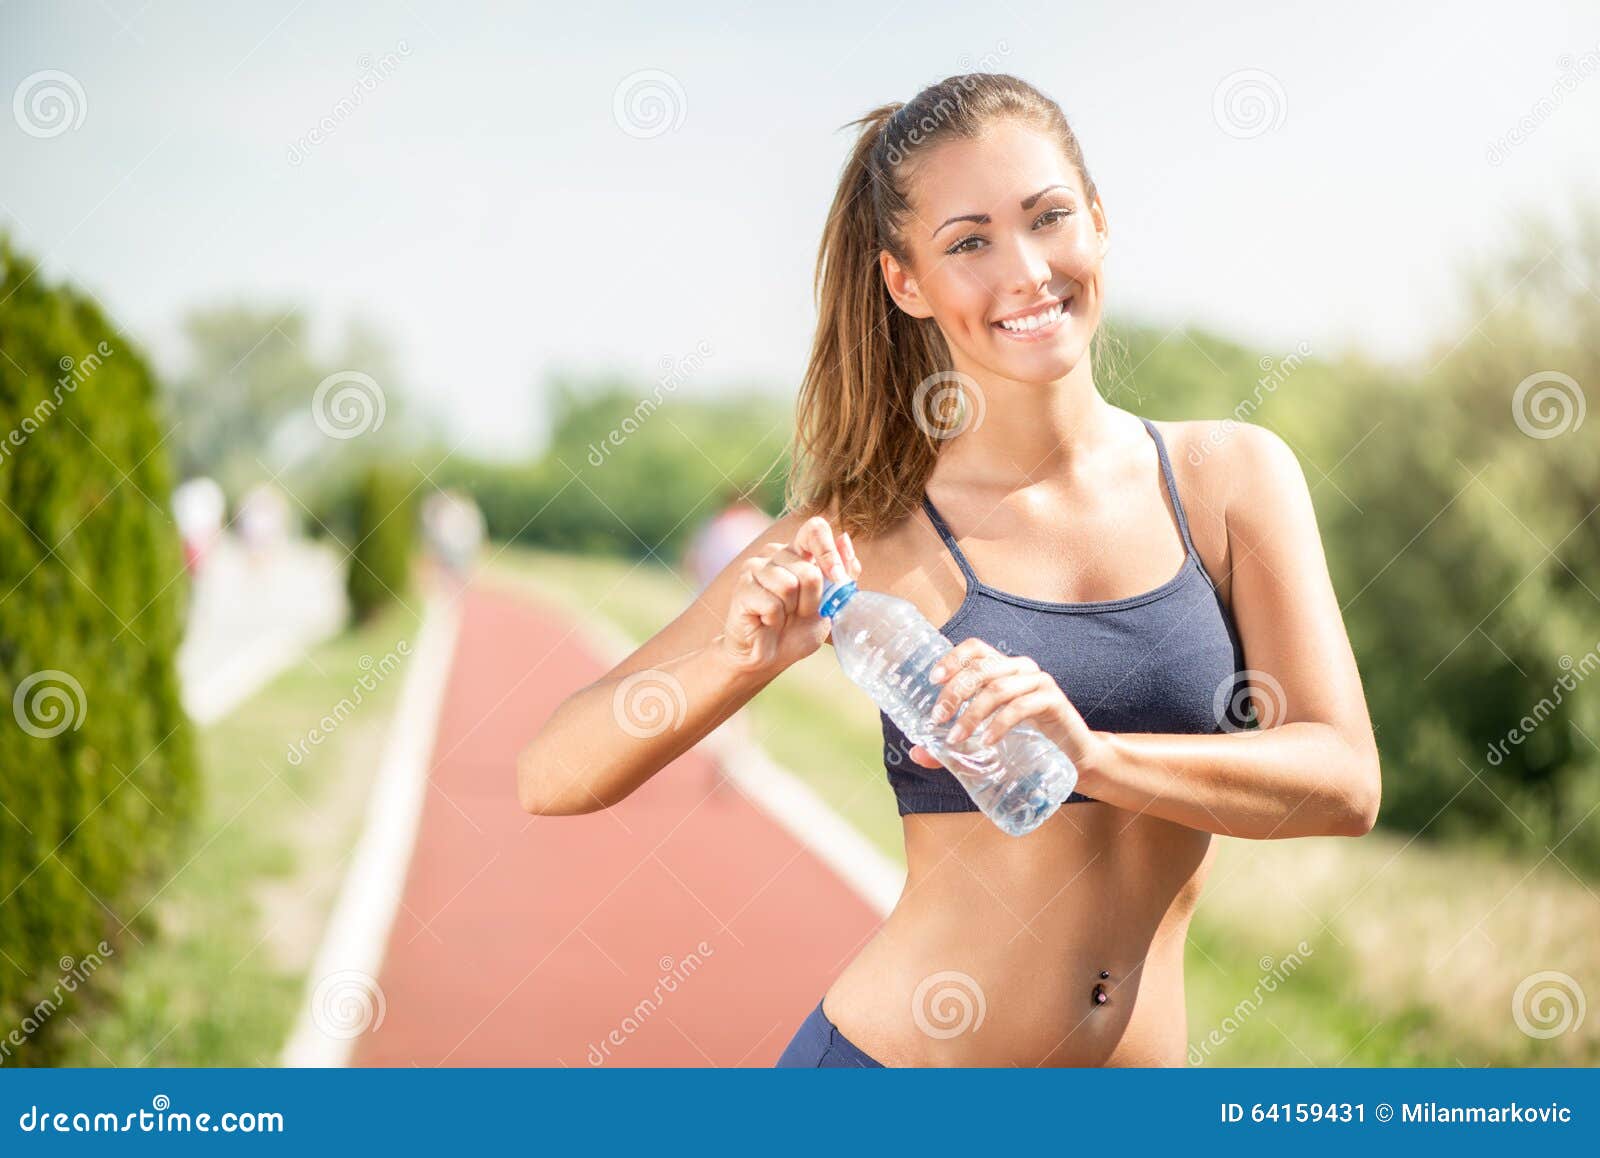 Вода после бега. Спортивная девушка с бутылкой воды. Спортивная женщина держит в руках. Фотография освежения. Фотографии молодых девушек которые ведут активный образ жизни.